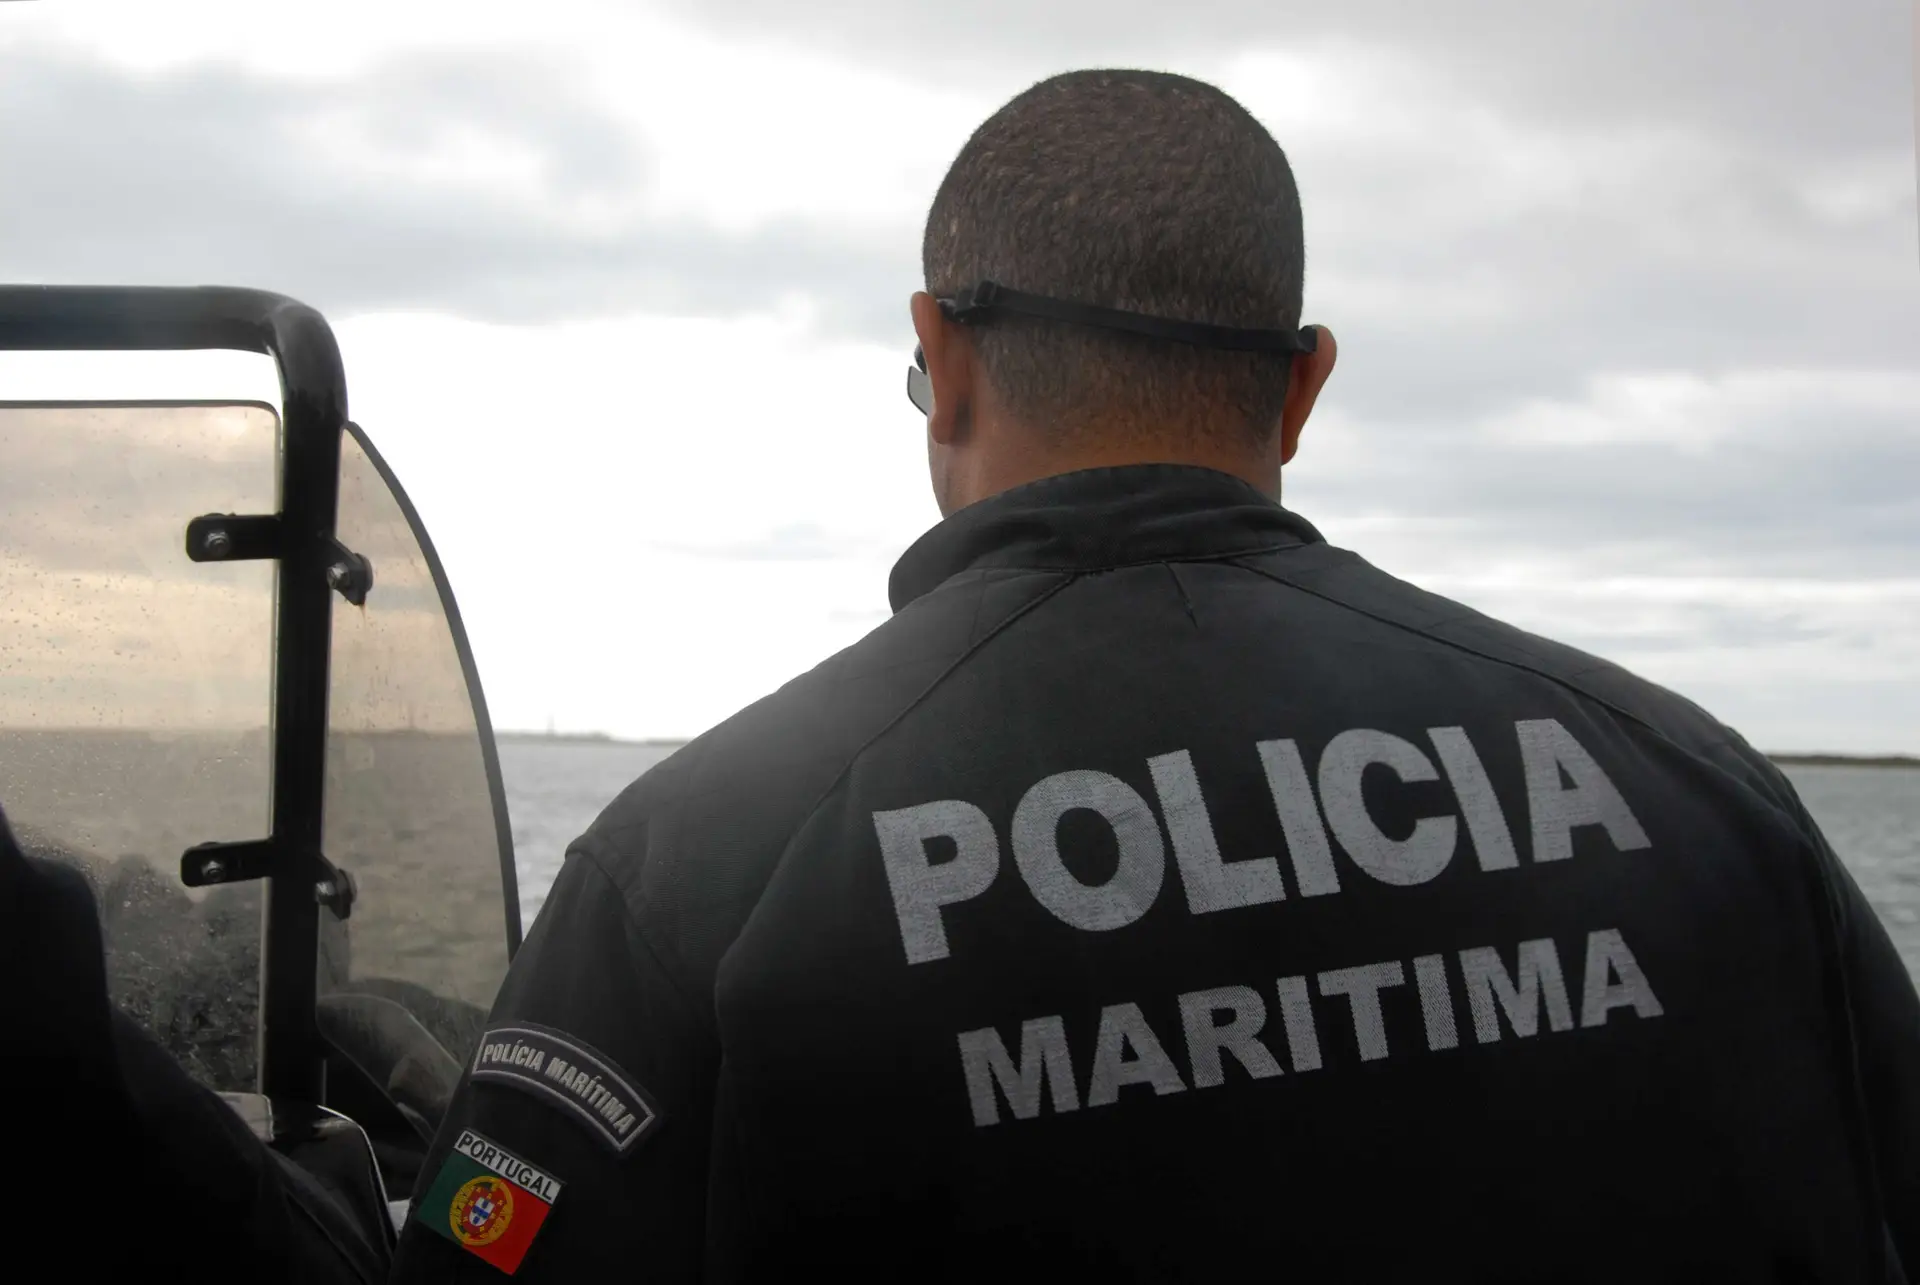 Polícia Marítima apreende uma tonelada de haxixe no Algarve após perseguição. Traficantes fugiram